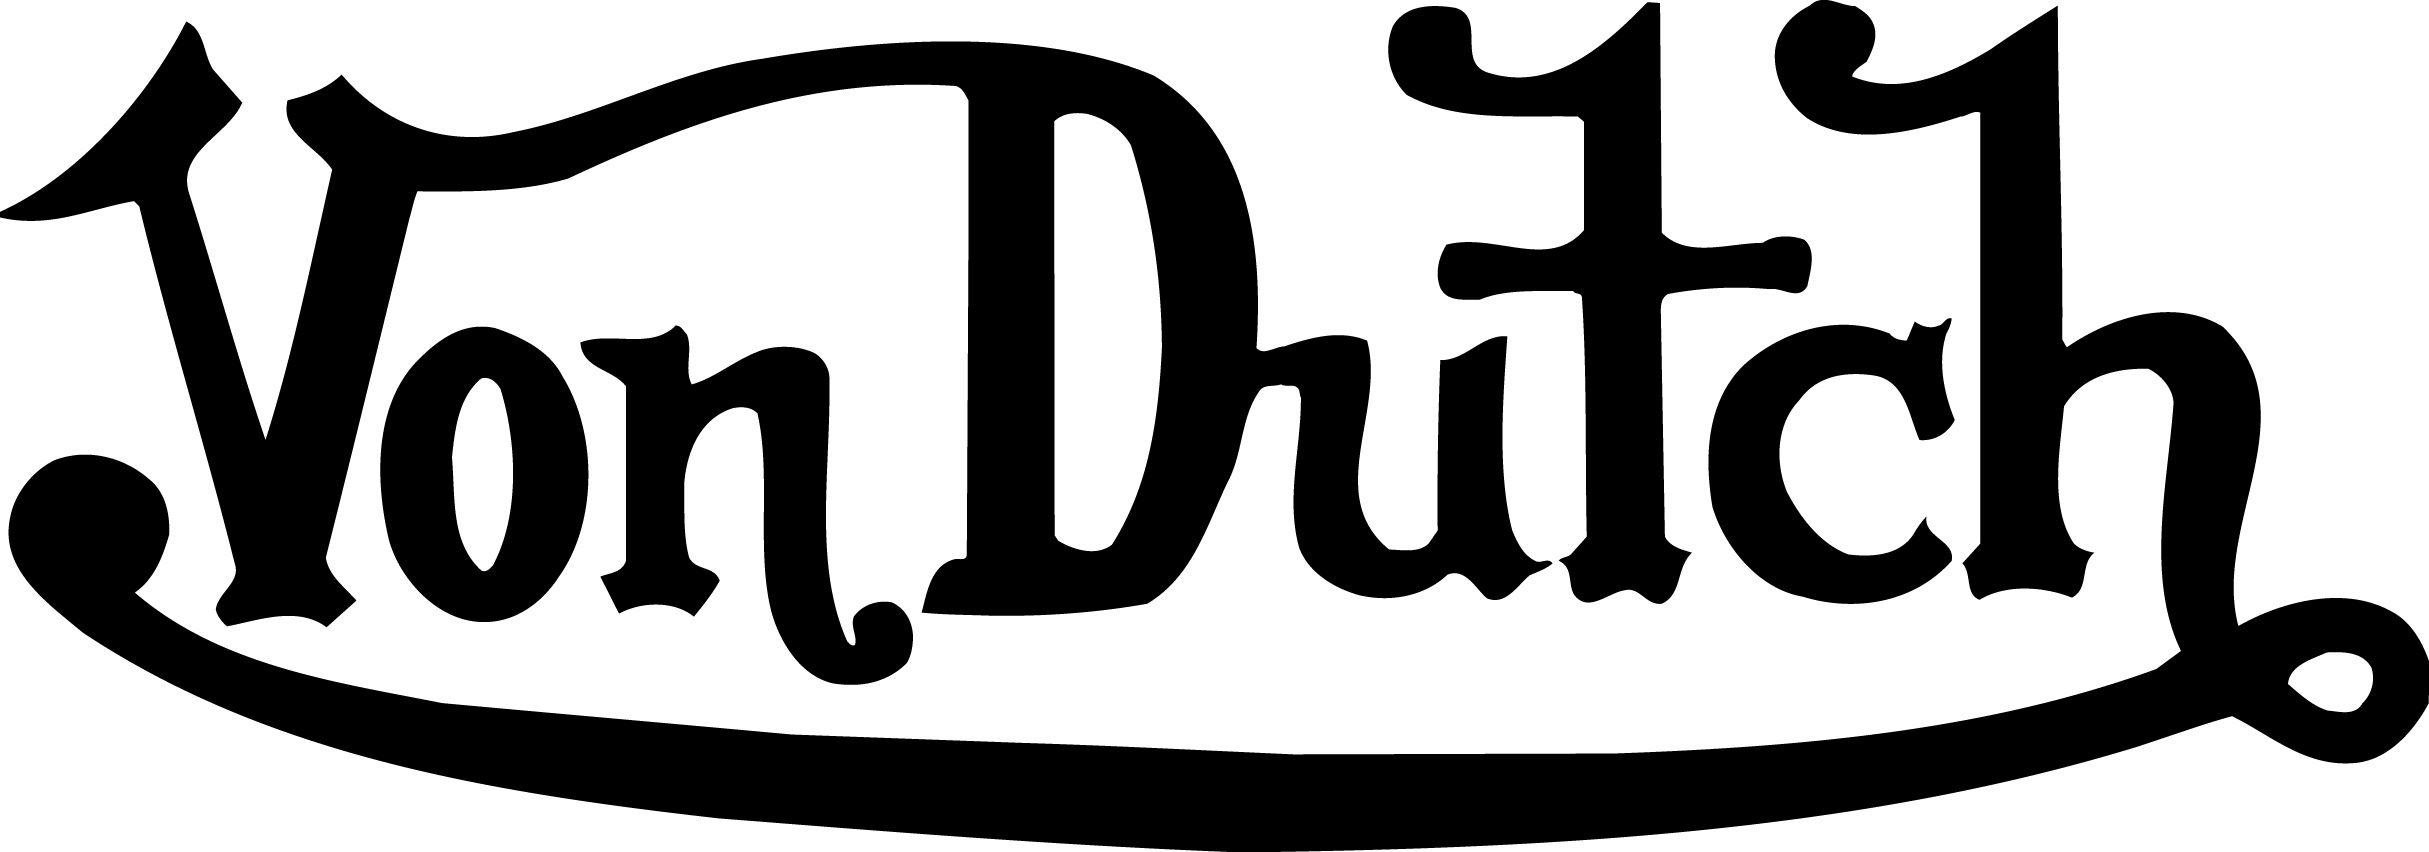 Von Logo - Von dutch Logos